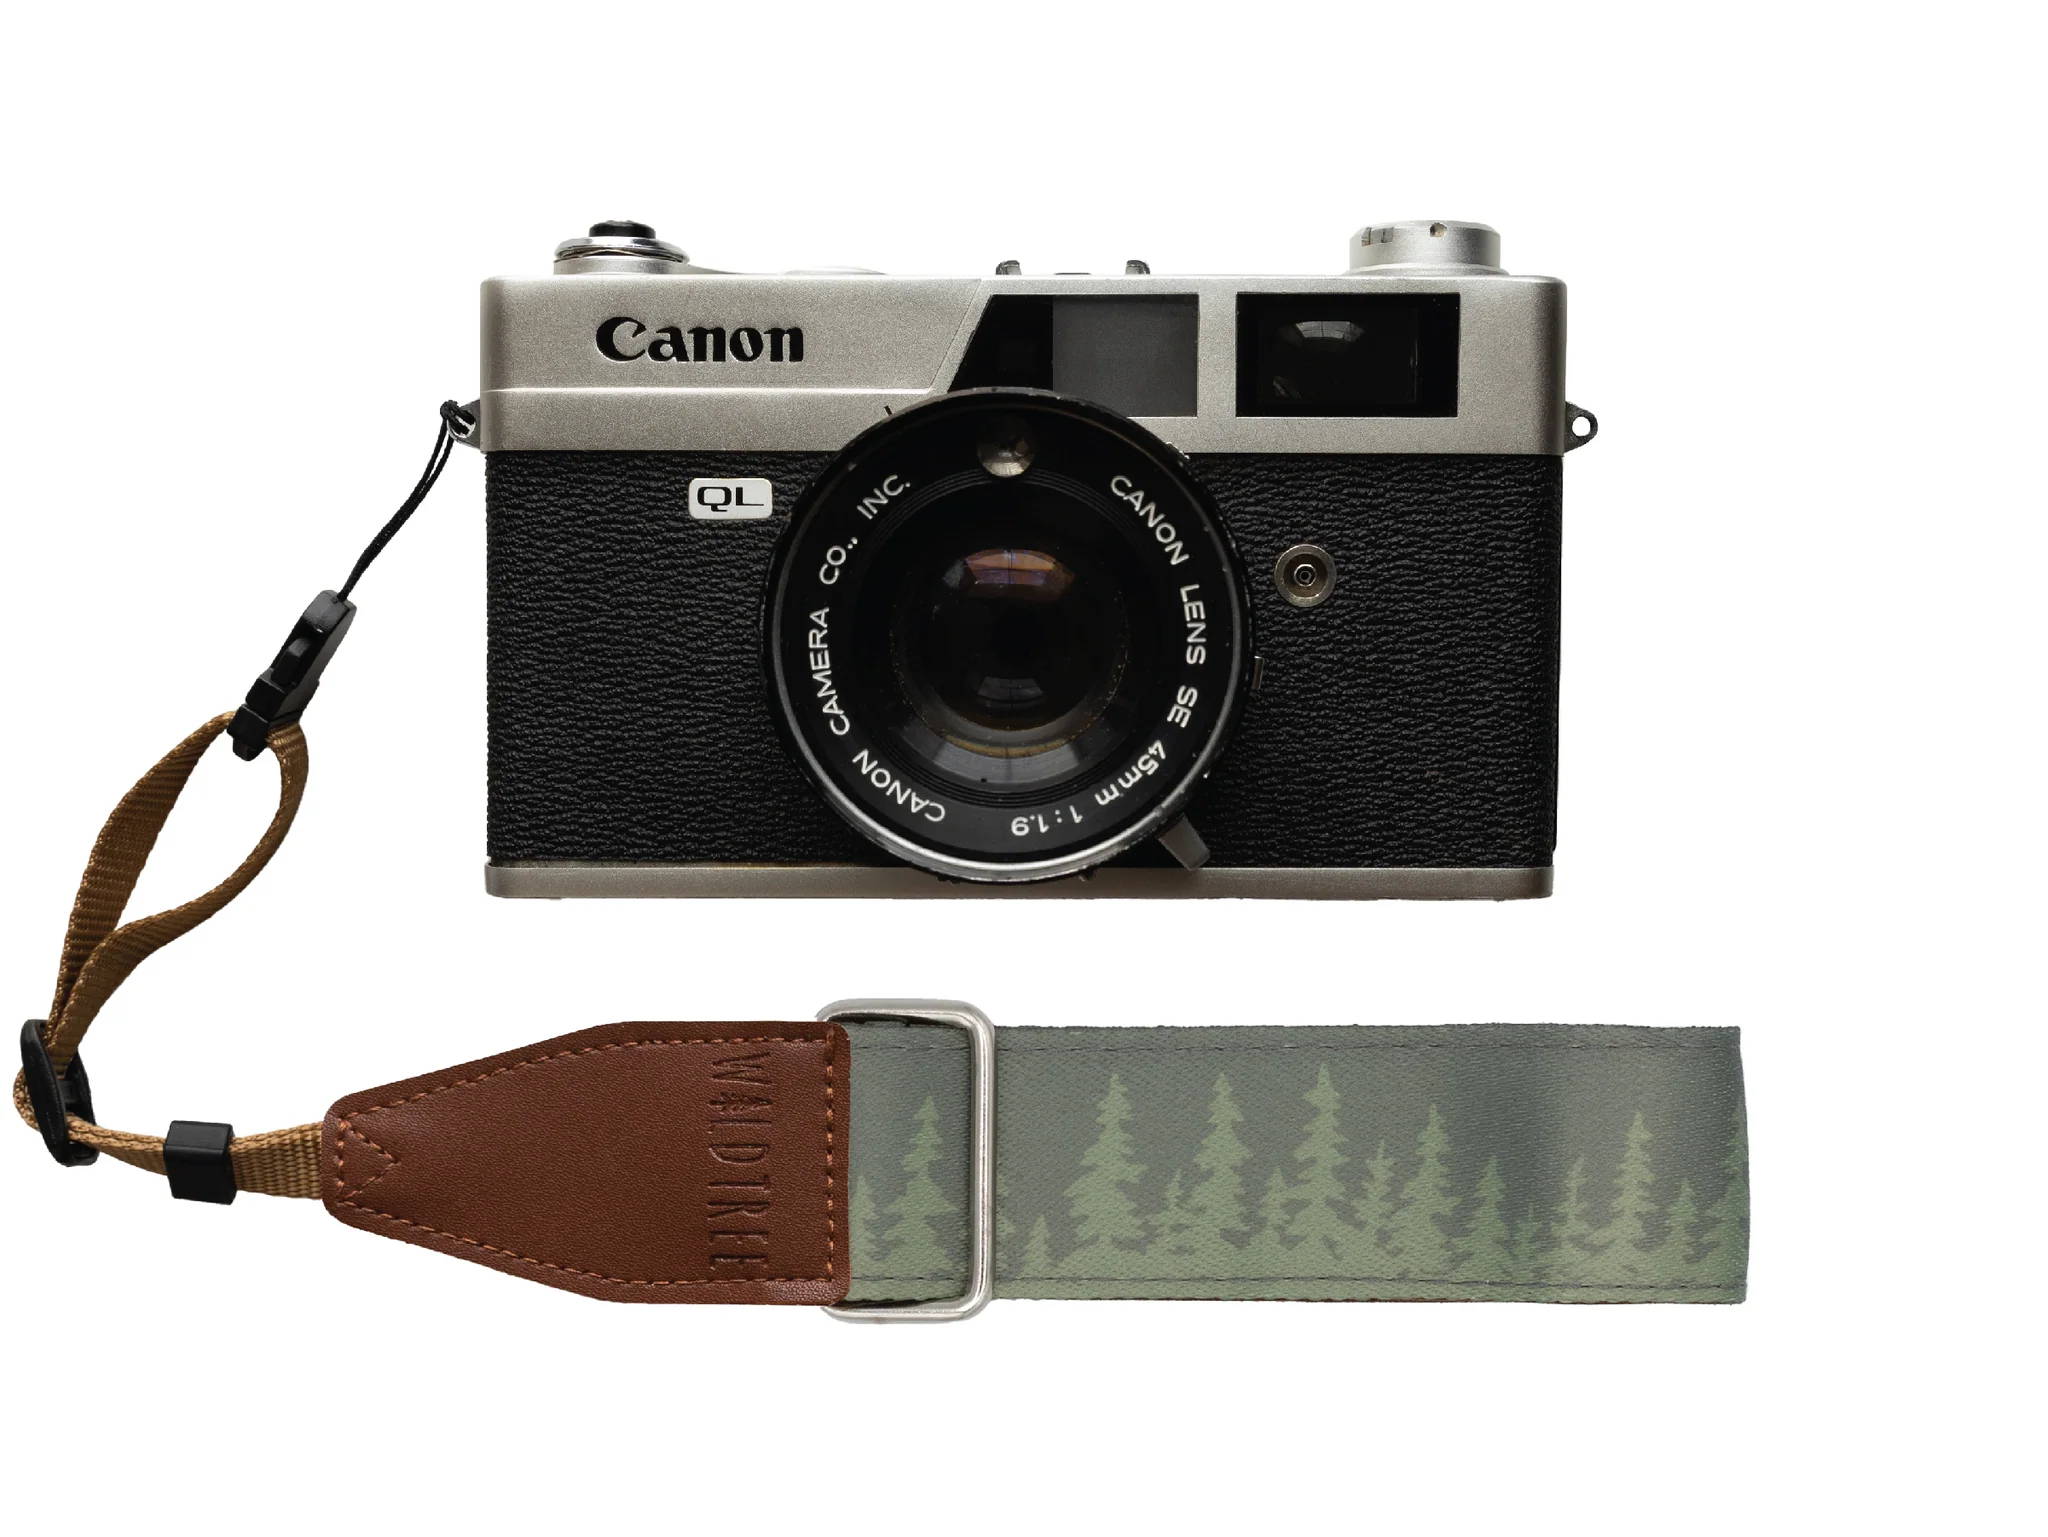 Cannon camera with a pine tree wrist camera strap design. 